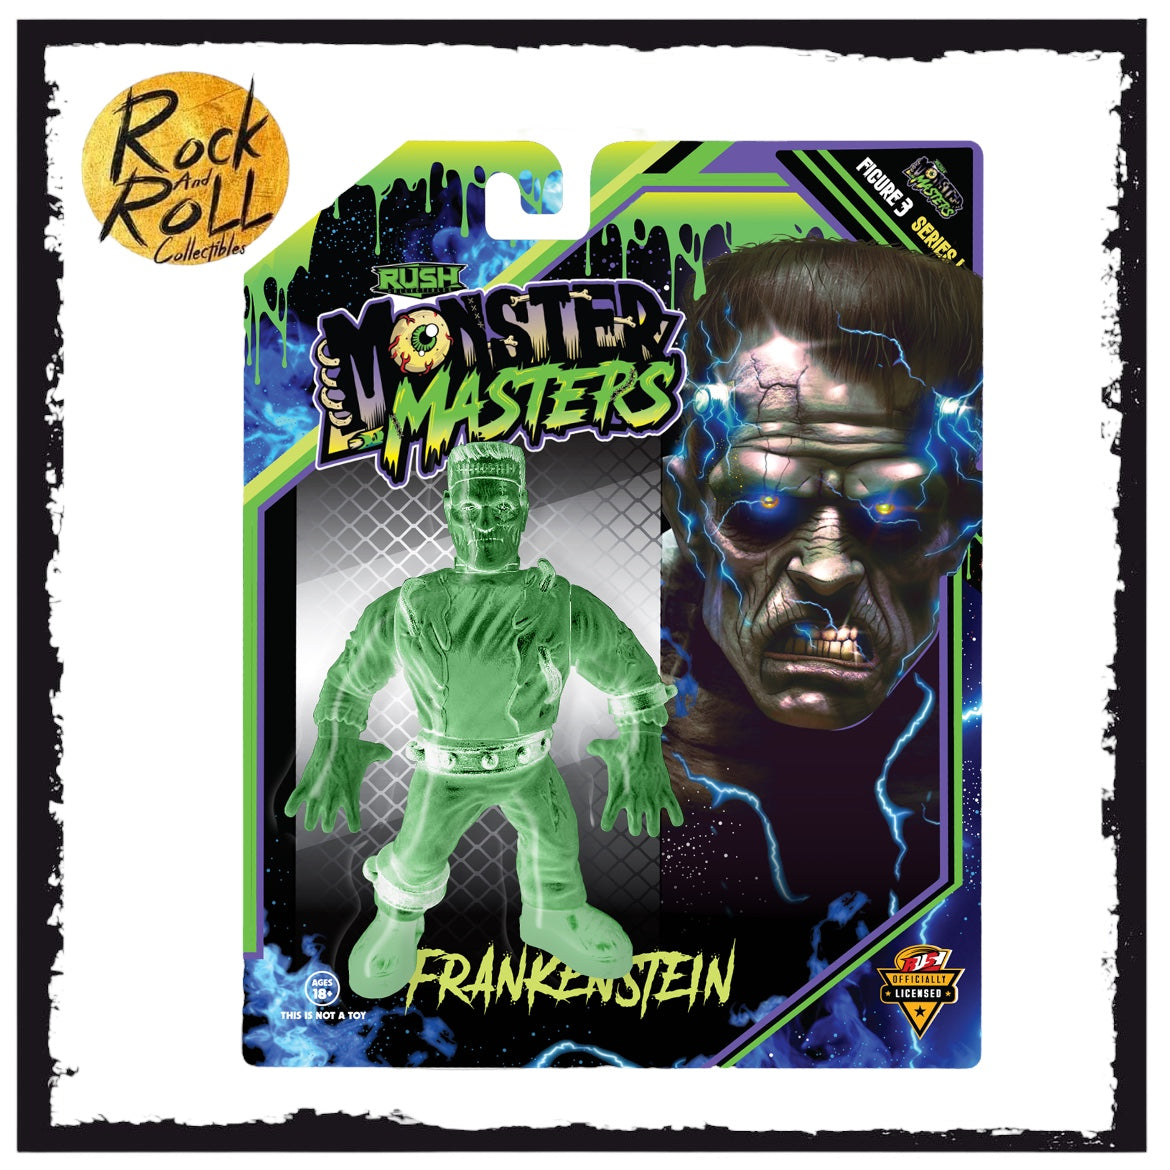 Retro Style Frankenstein Glow In The Dark Variant Pre Order